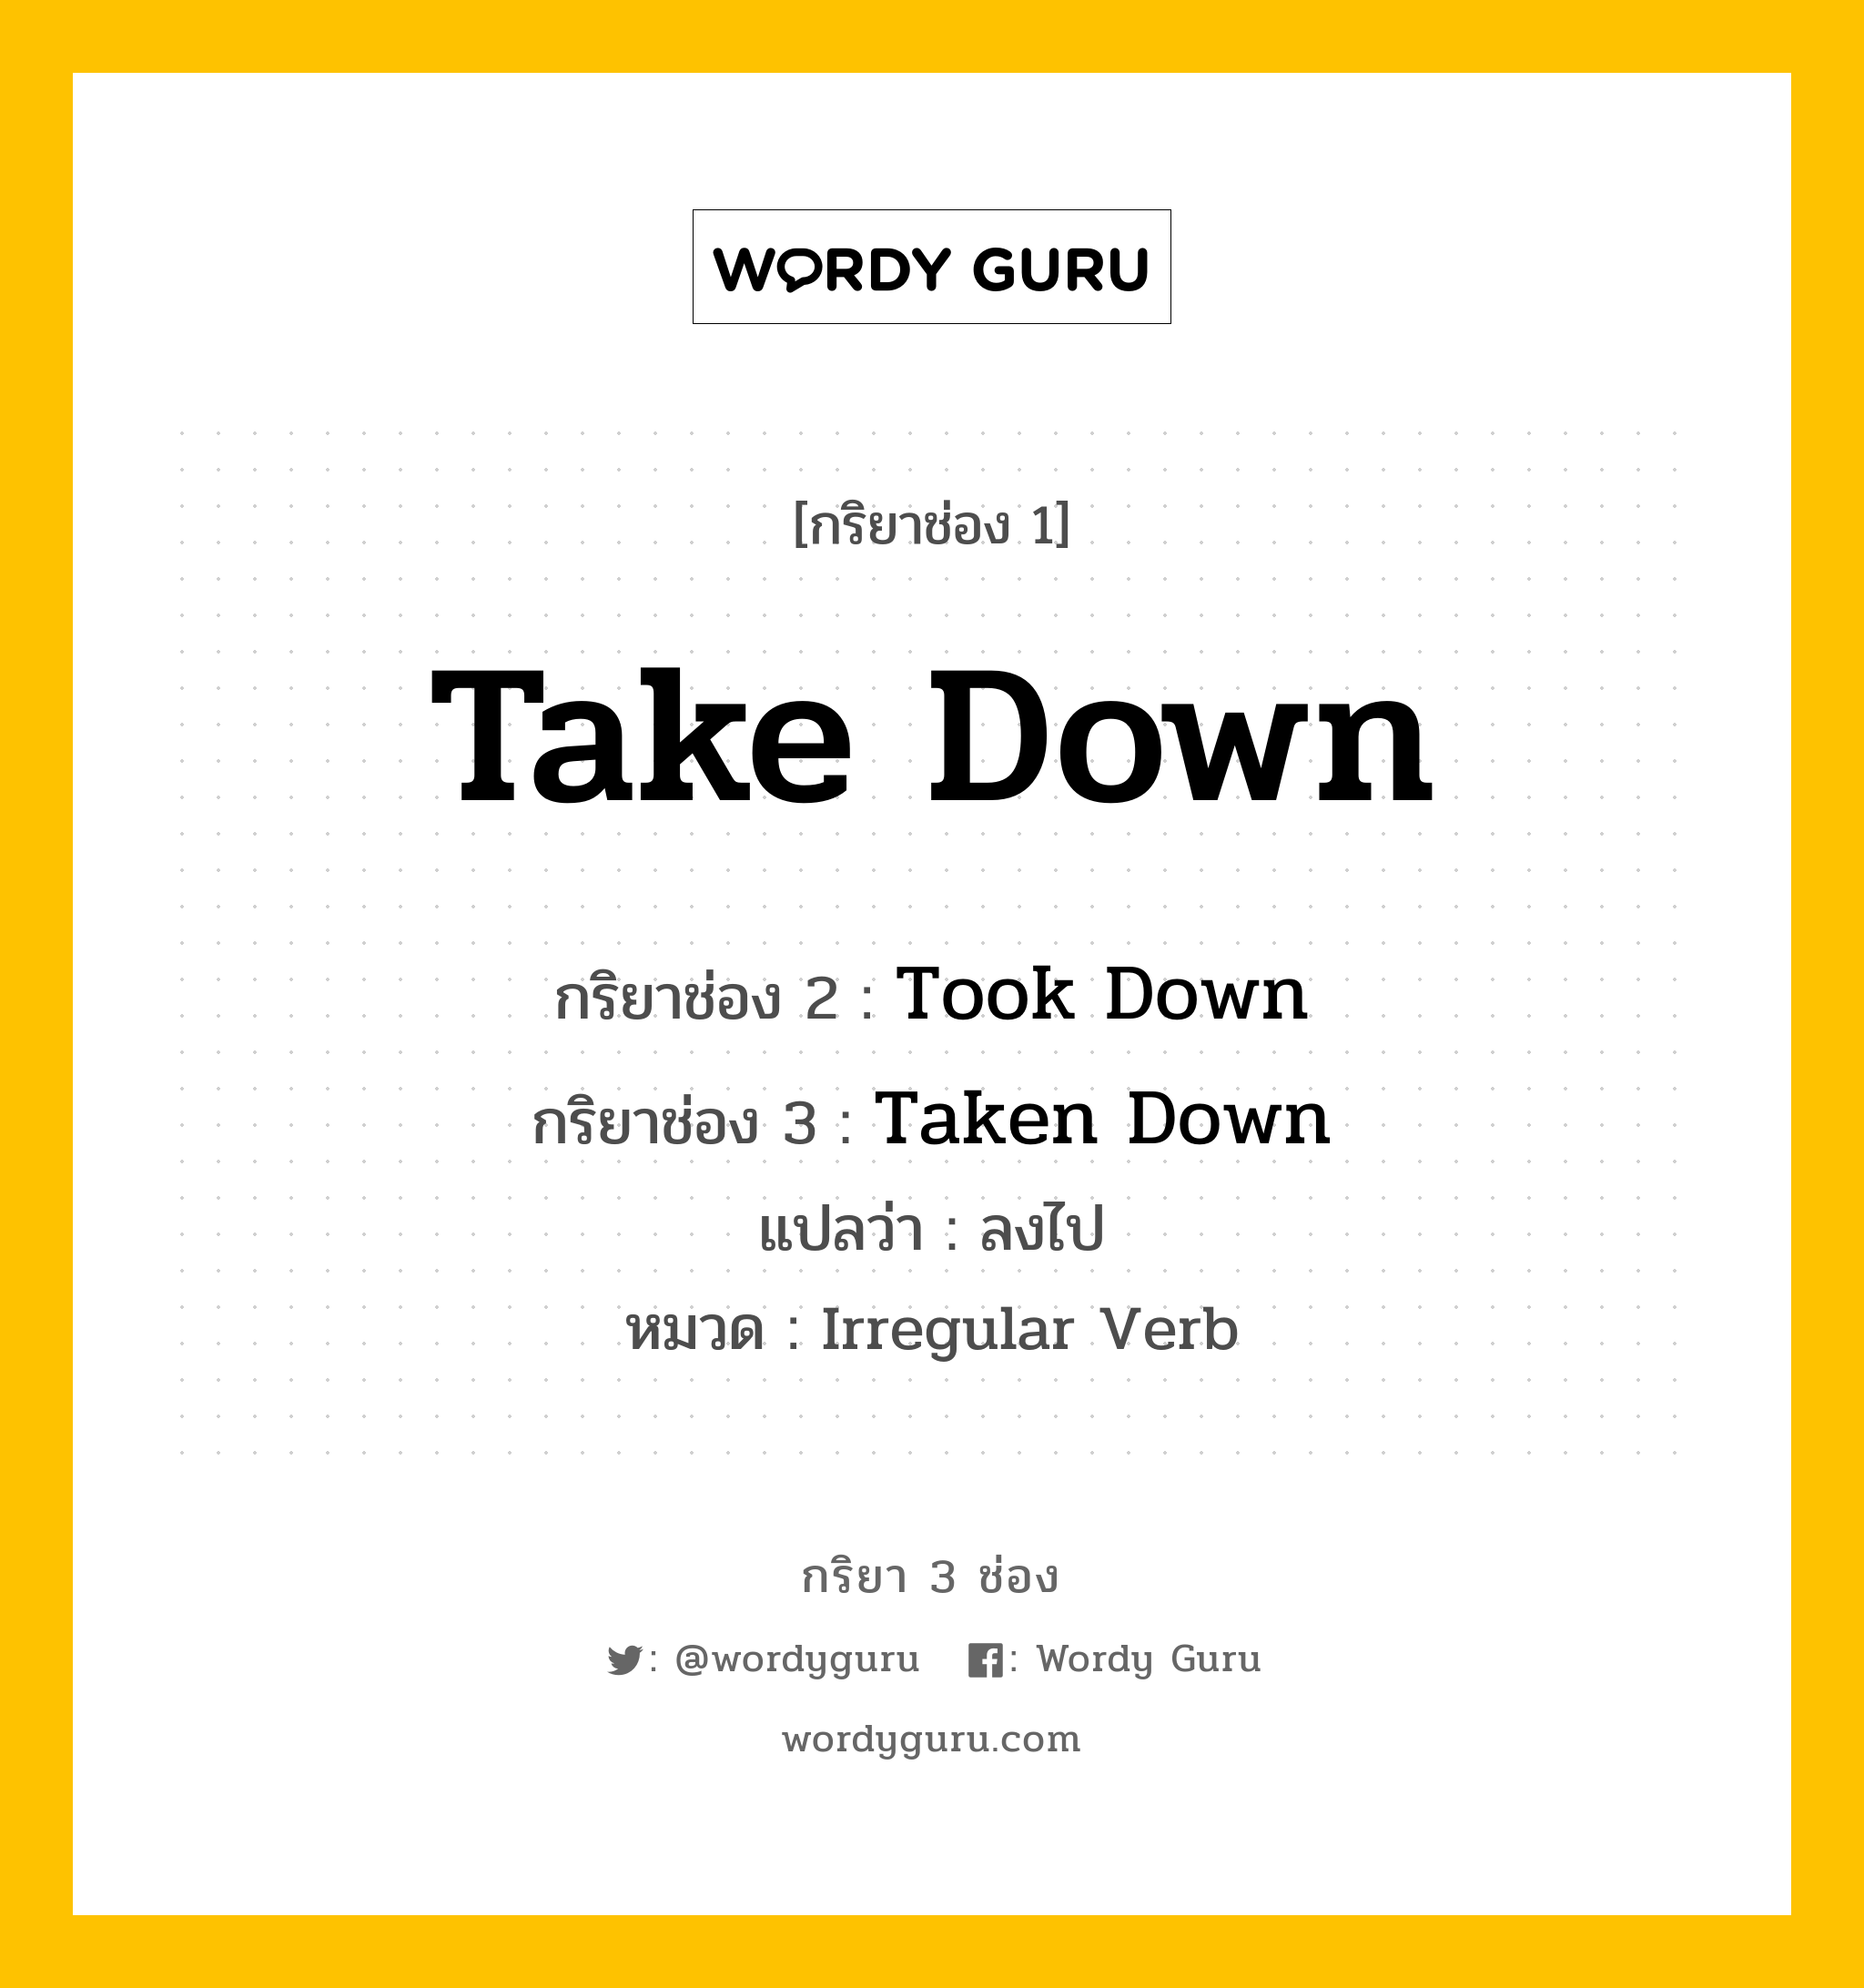 กริยา 3 ช่อง: Take Down ช่อง 2 Take Down ช่อง 3 คืออะไร, กริยาช่อง 1 Take Down กริยาช่อง 2 Took Down กริยาช่อง 3 Taken Down แปลว่า ลงไป หมวด Irregular Verb หมวด Irregular Verb